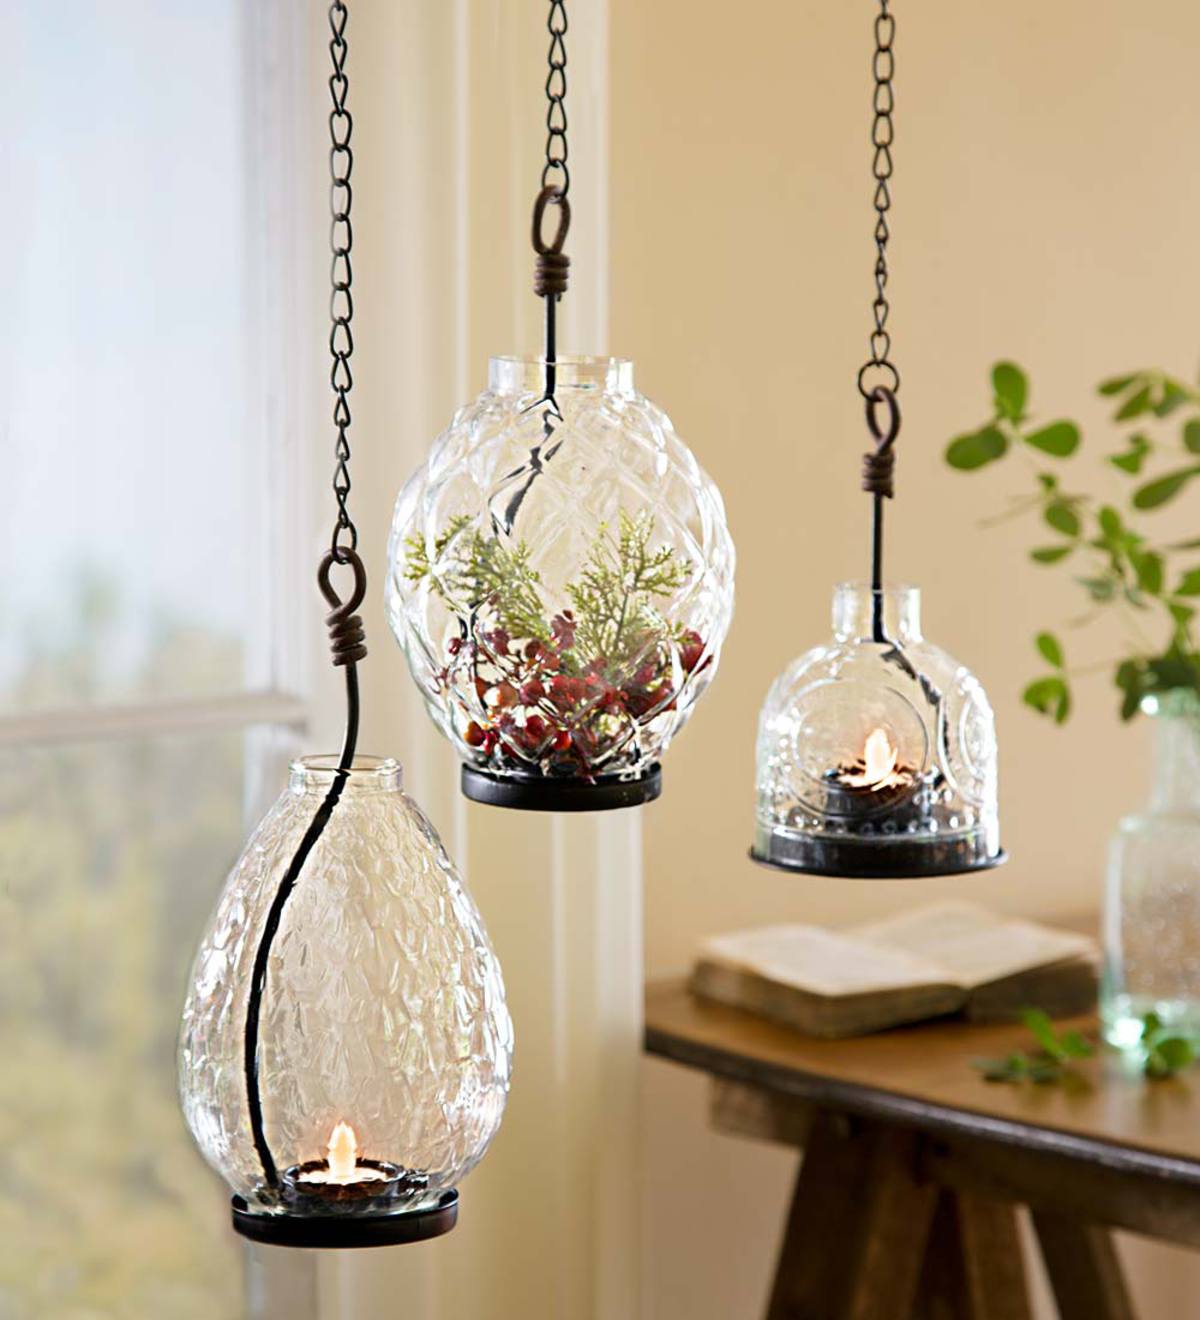 Large Hanging Glass Tealight Lantern